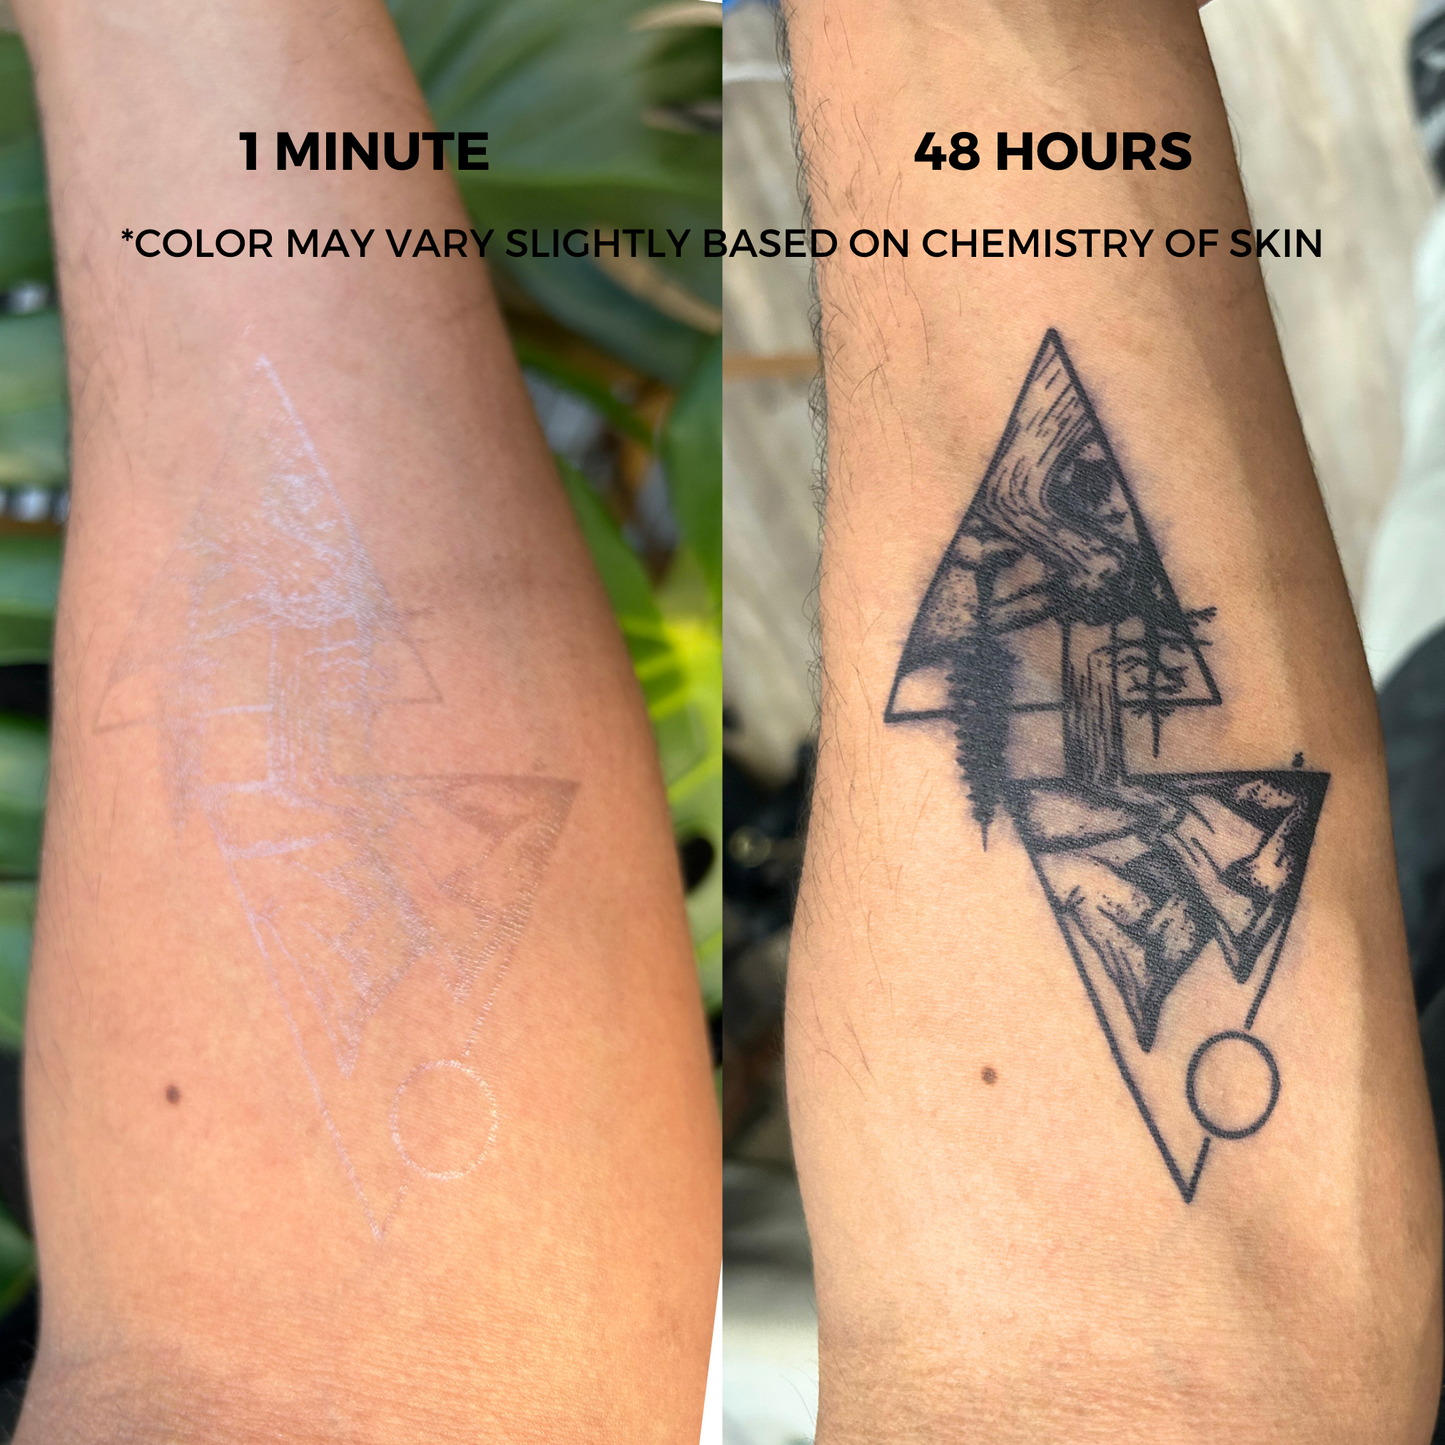 Bird Tattoo | 2 Week Temporary Tattoo | Semi Permanent Tattoo | Plant Based Vegan Tattoo | Inspirational Tattoo | Letter Tattoo | Festival Tattoo | Gift Idea | Boho Tattoo | Bohemian Tattoo